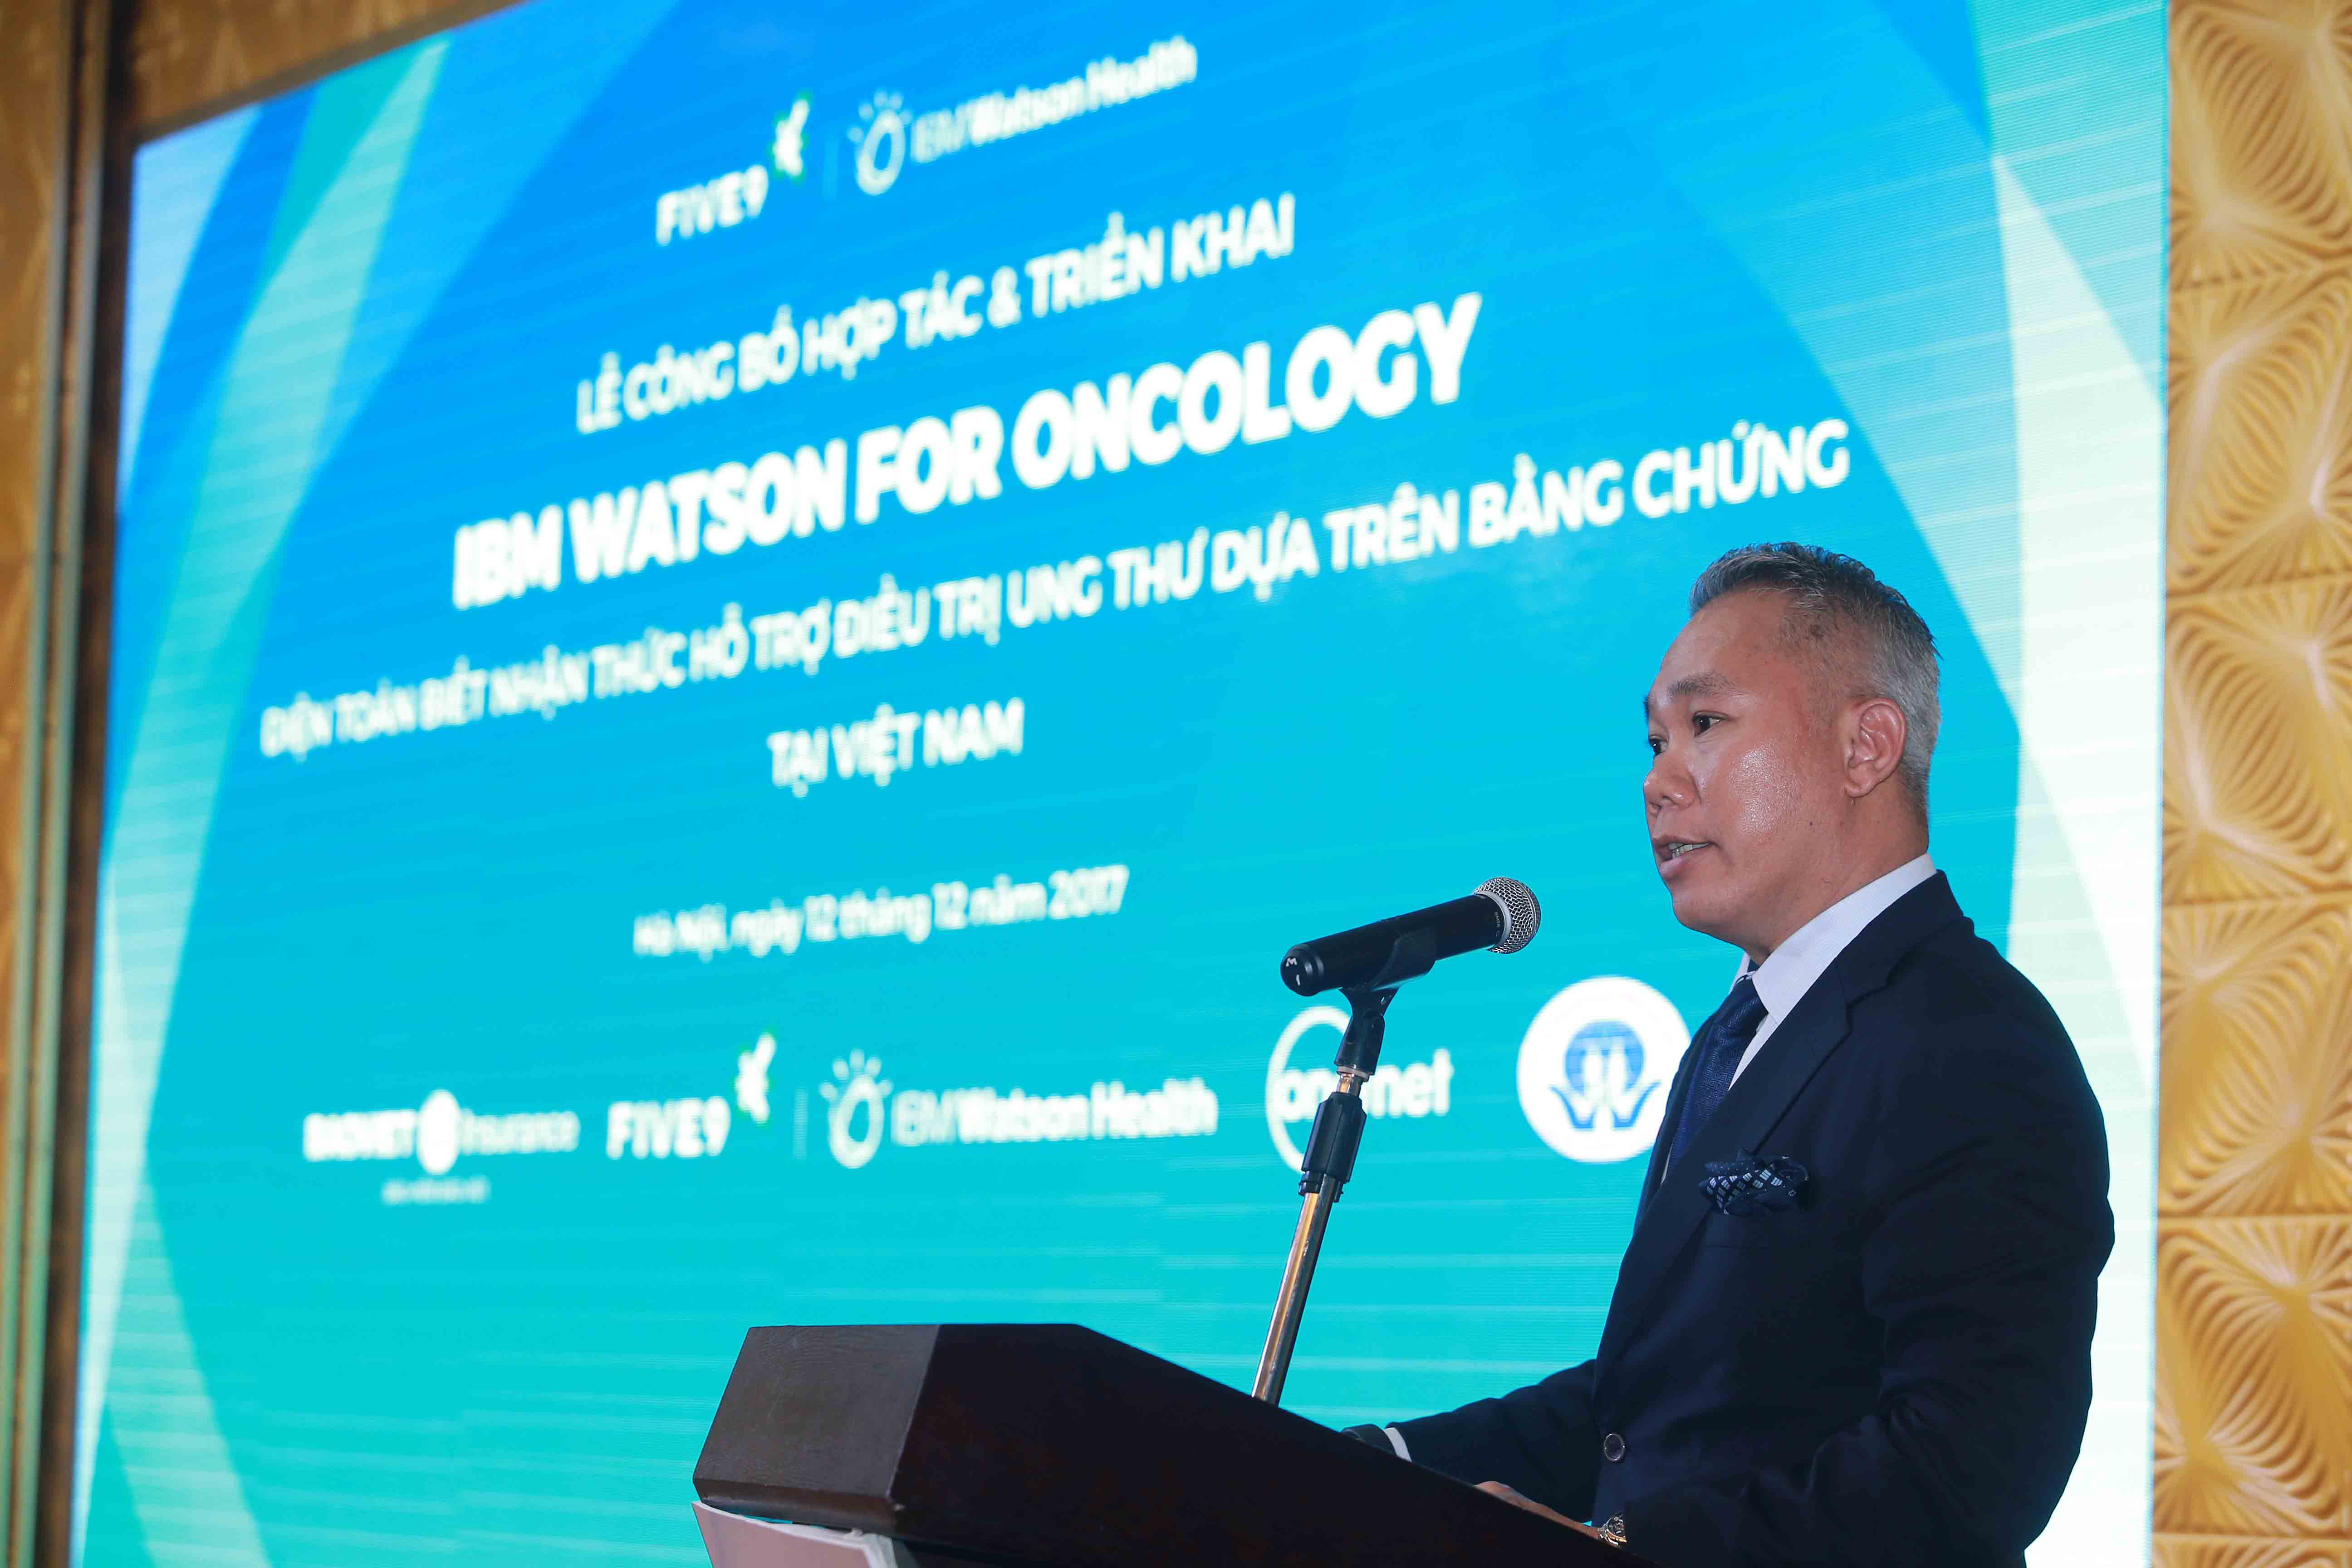 tổng giám đốc IBM Việt Nam công nghệ IBM Watson for Oncology tại Việt Nam